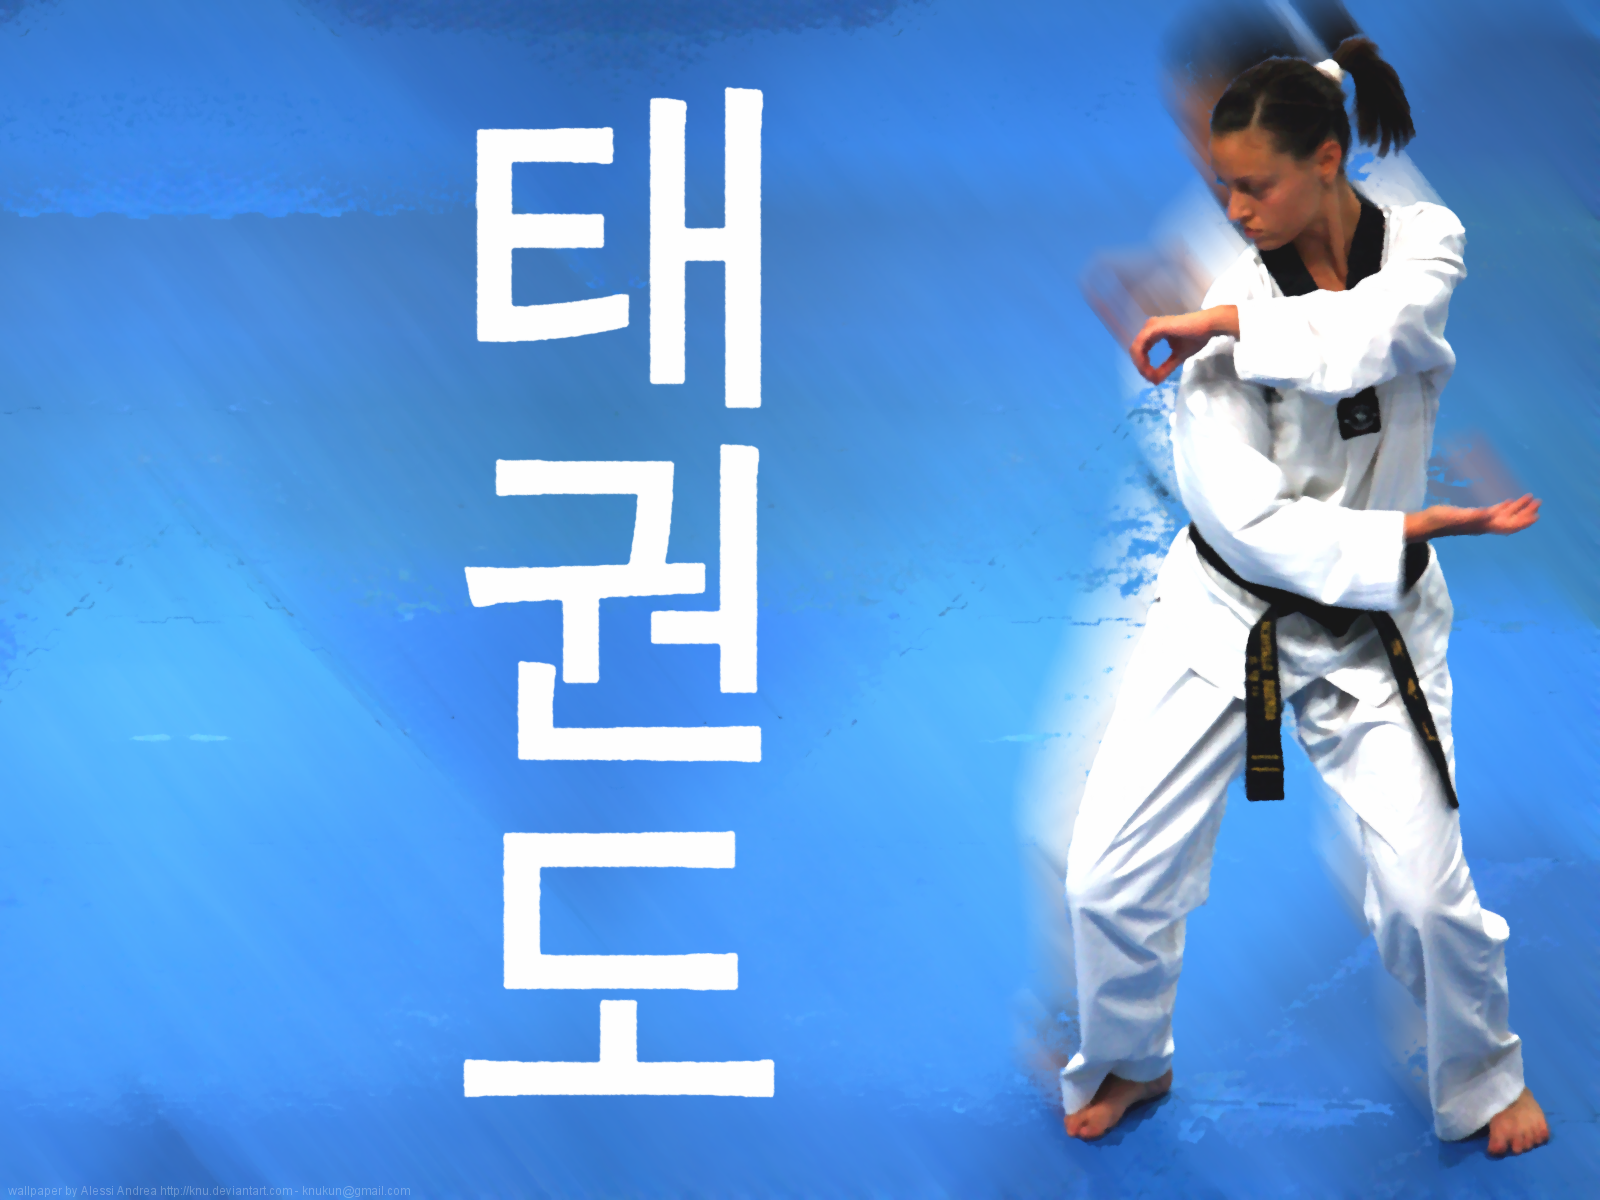 Gide Es De Cristo Taekwondo Wallpaper